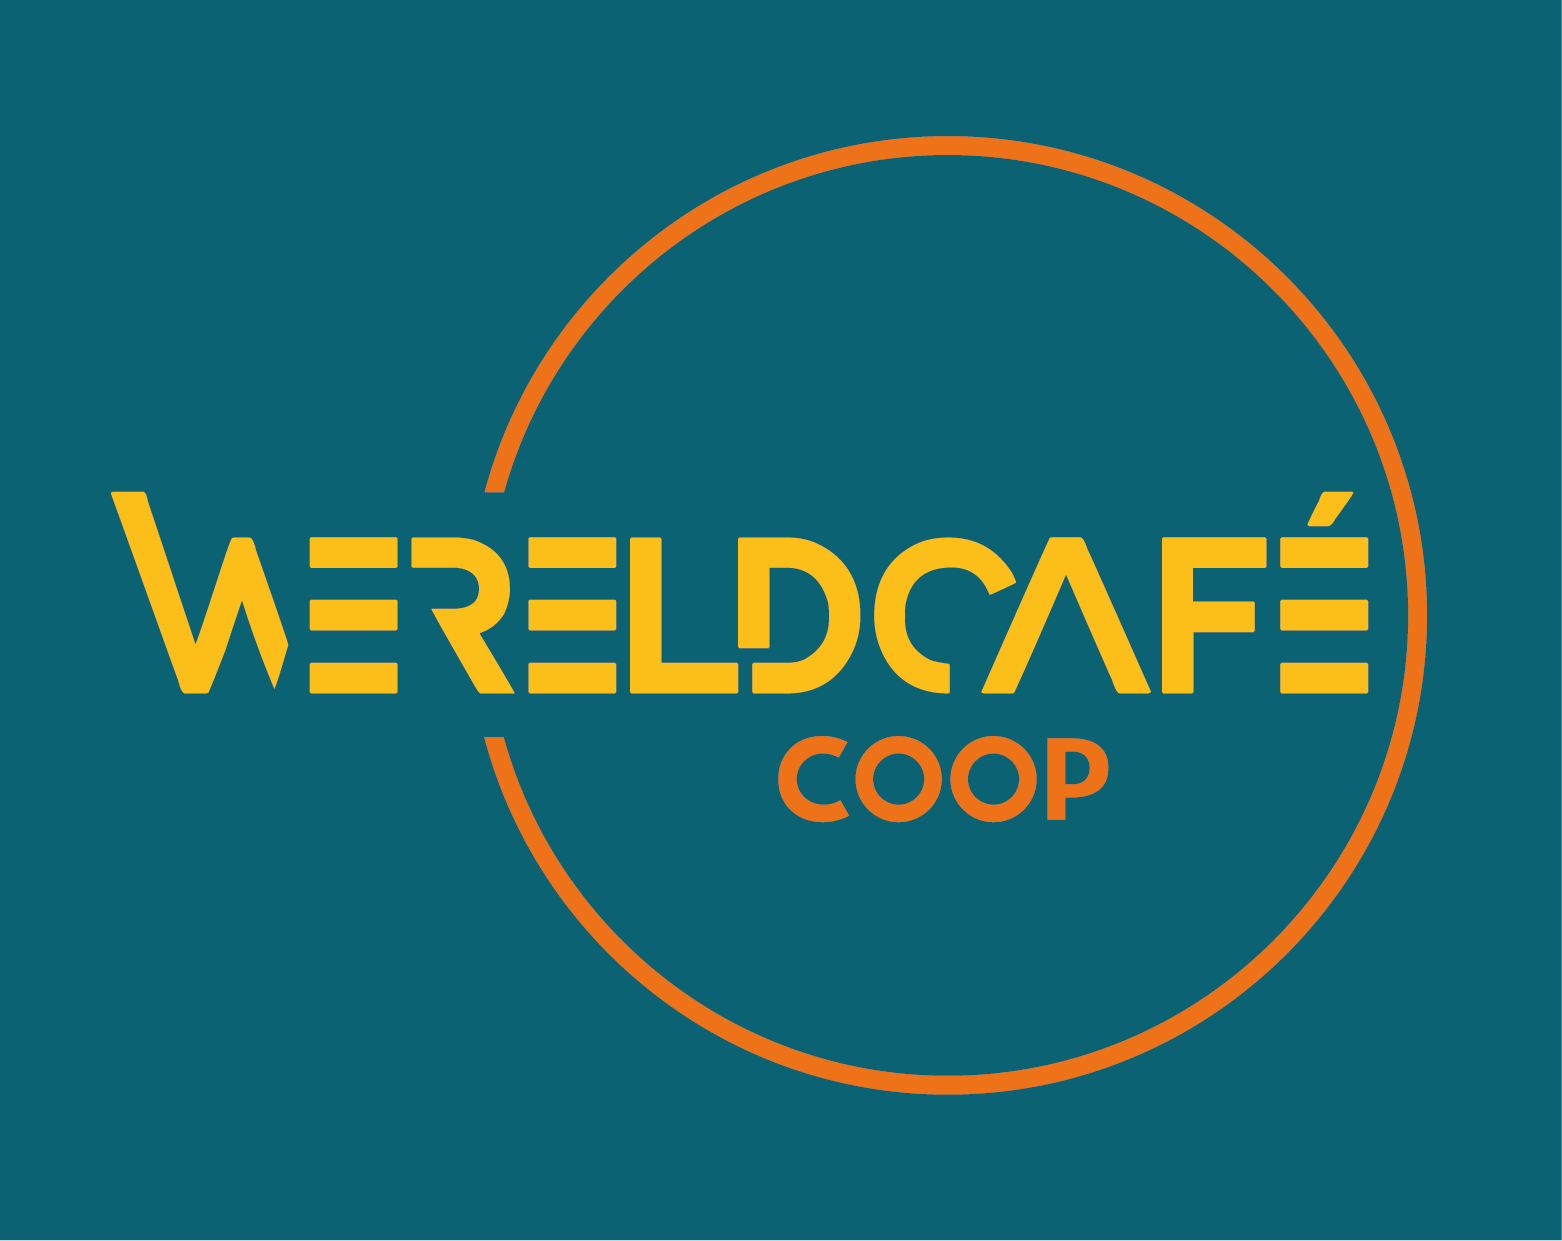 Wereldcafe coop